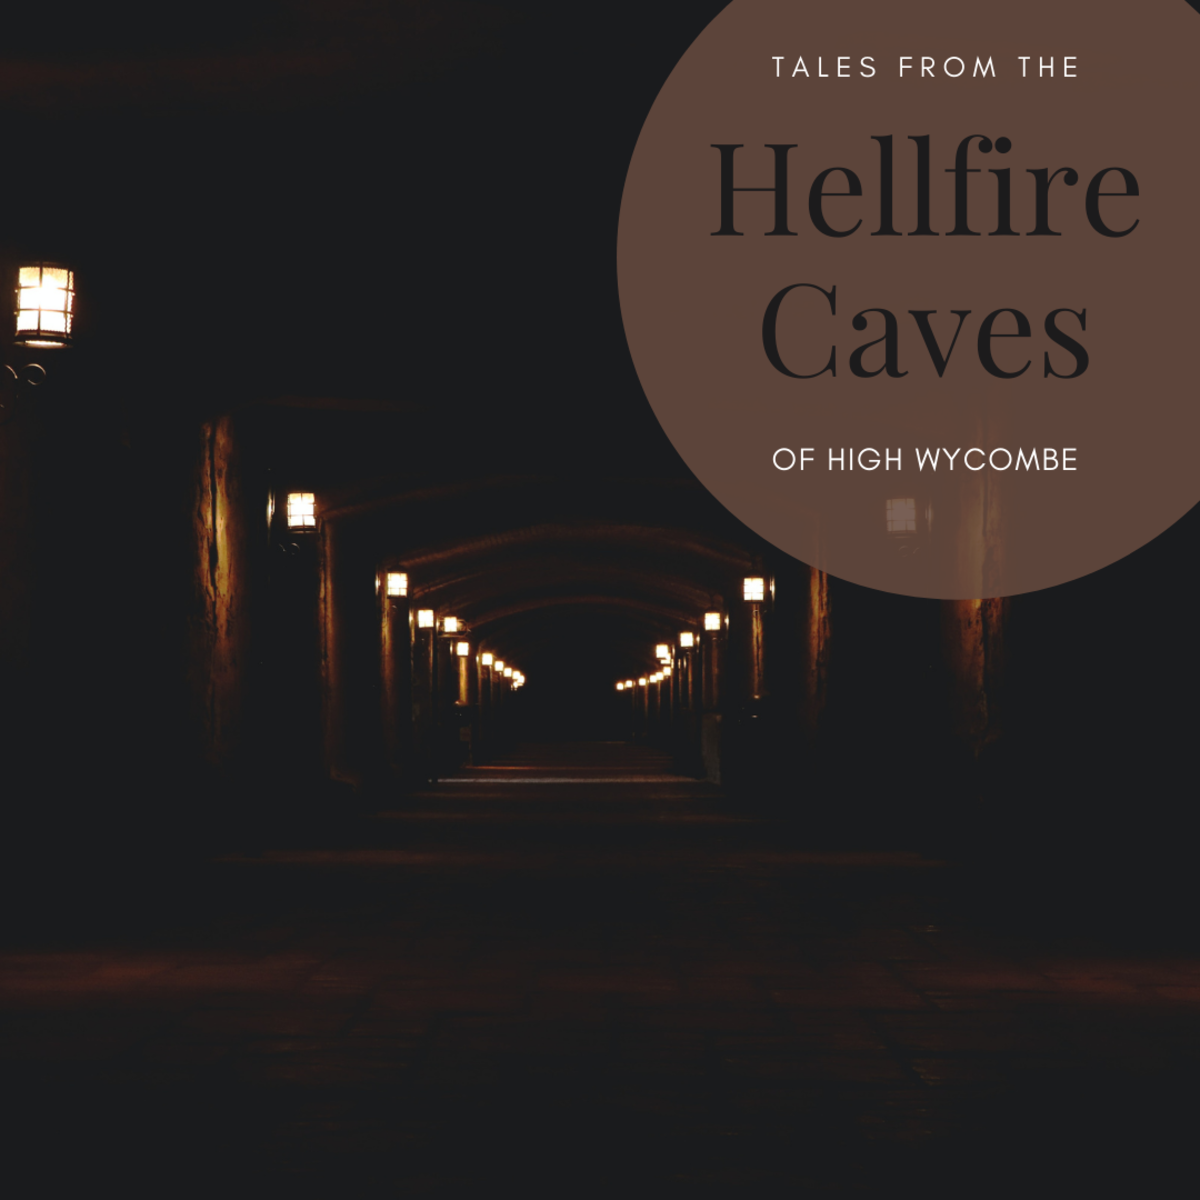 The Hellfire Caves make for a creepy destination.